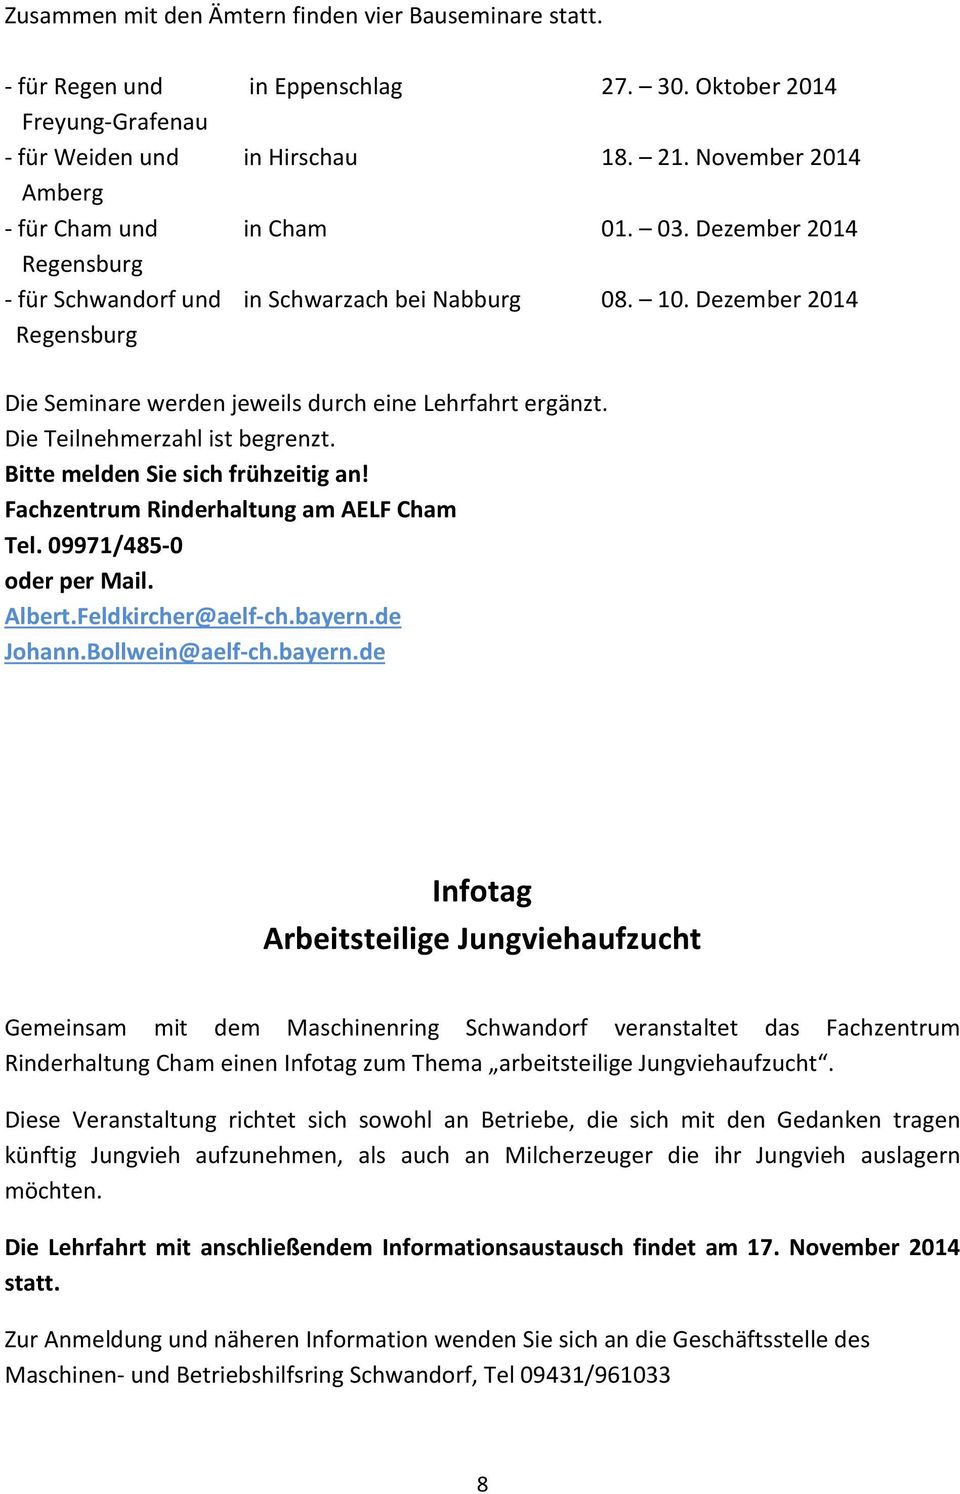 Dezember 2014 Regensburg Die Seminare werden jeweils durch eine Lehrfahrt ergänzt. Die Teilnehmerzahl ist begrenzt. Bitte melden Sie sich frühzeitig an! Fachzentrum Rinderhaltung am AELF Cham Tel.